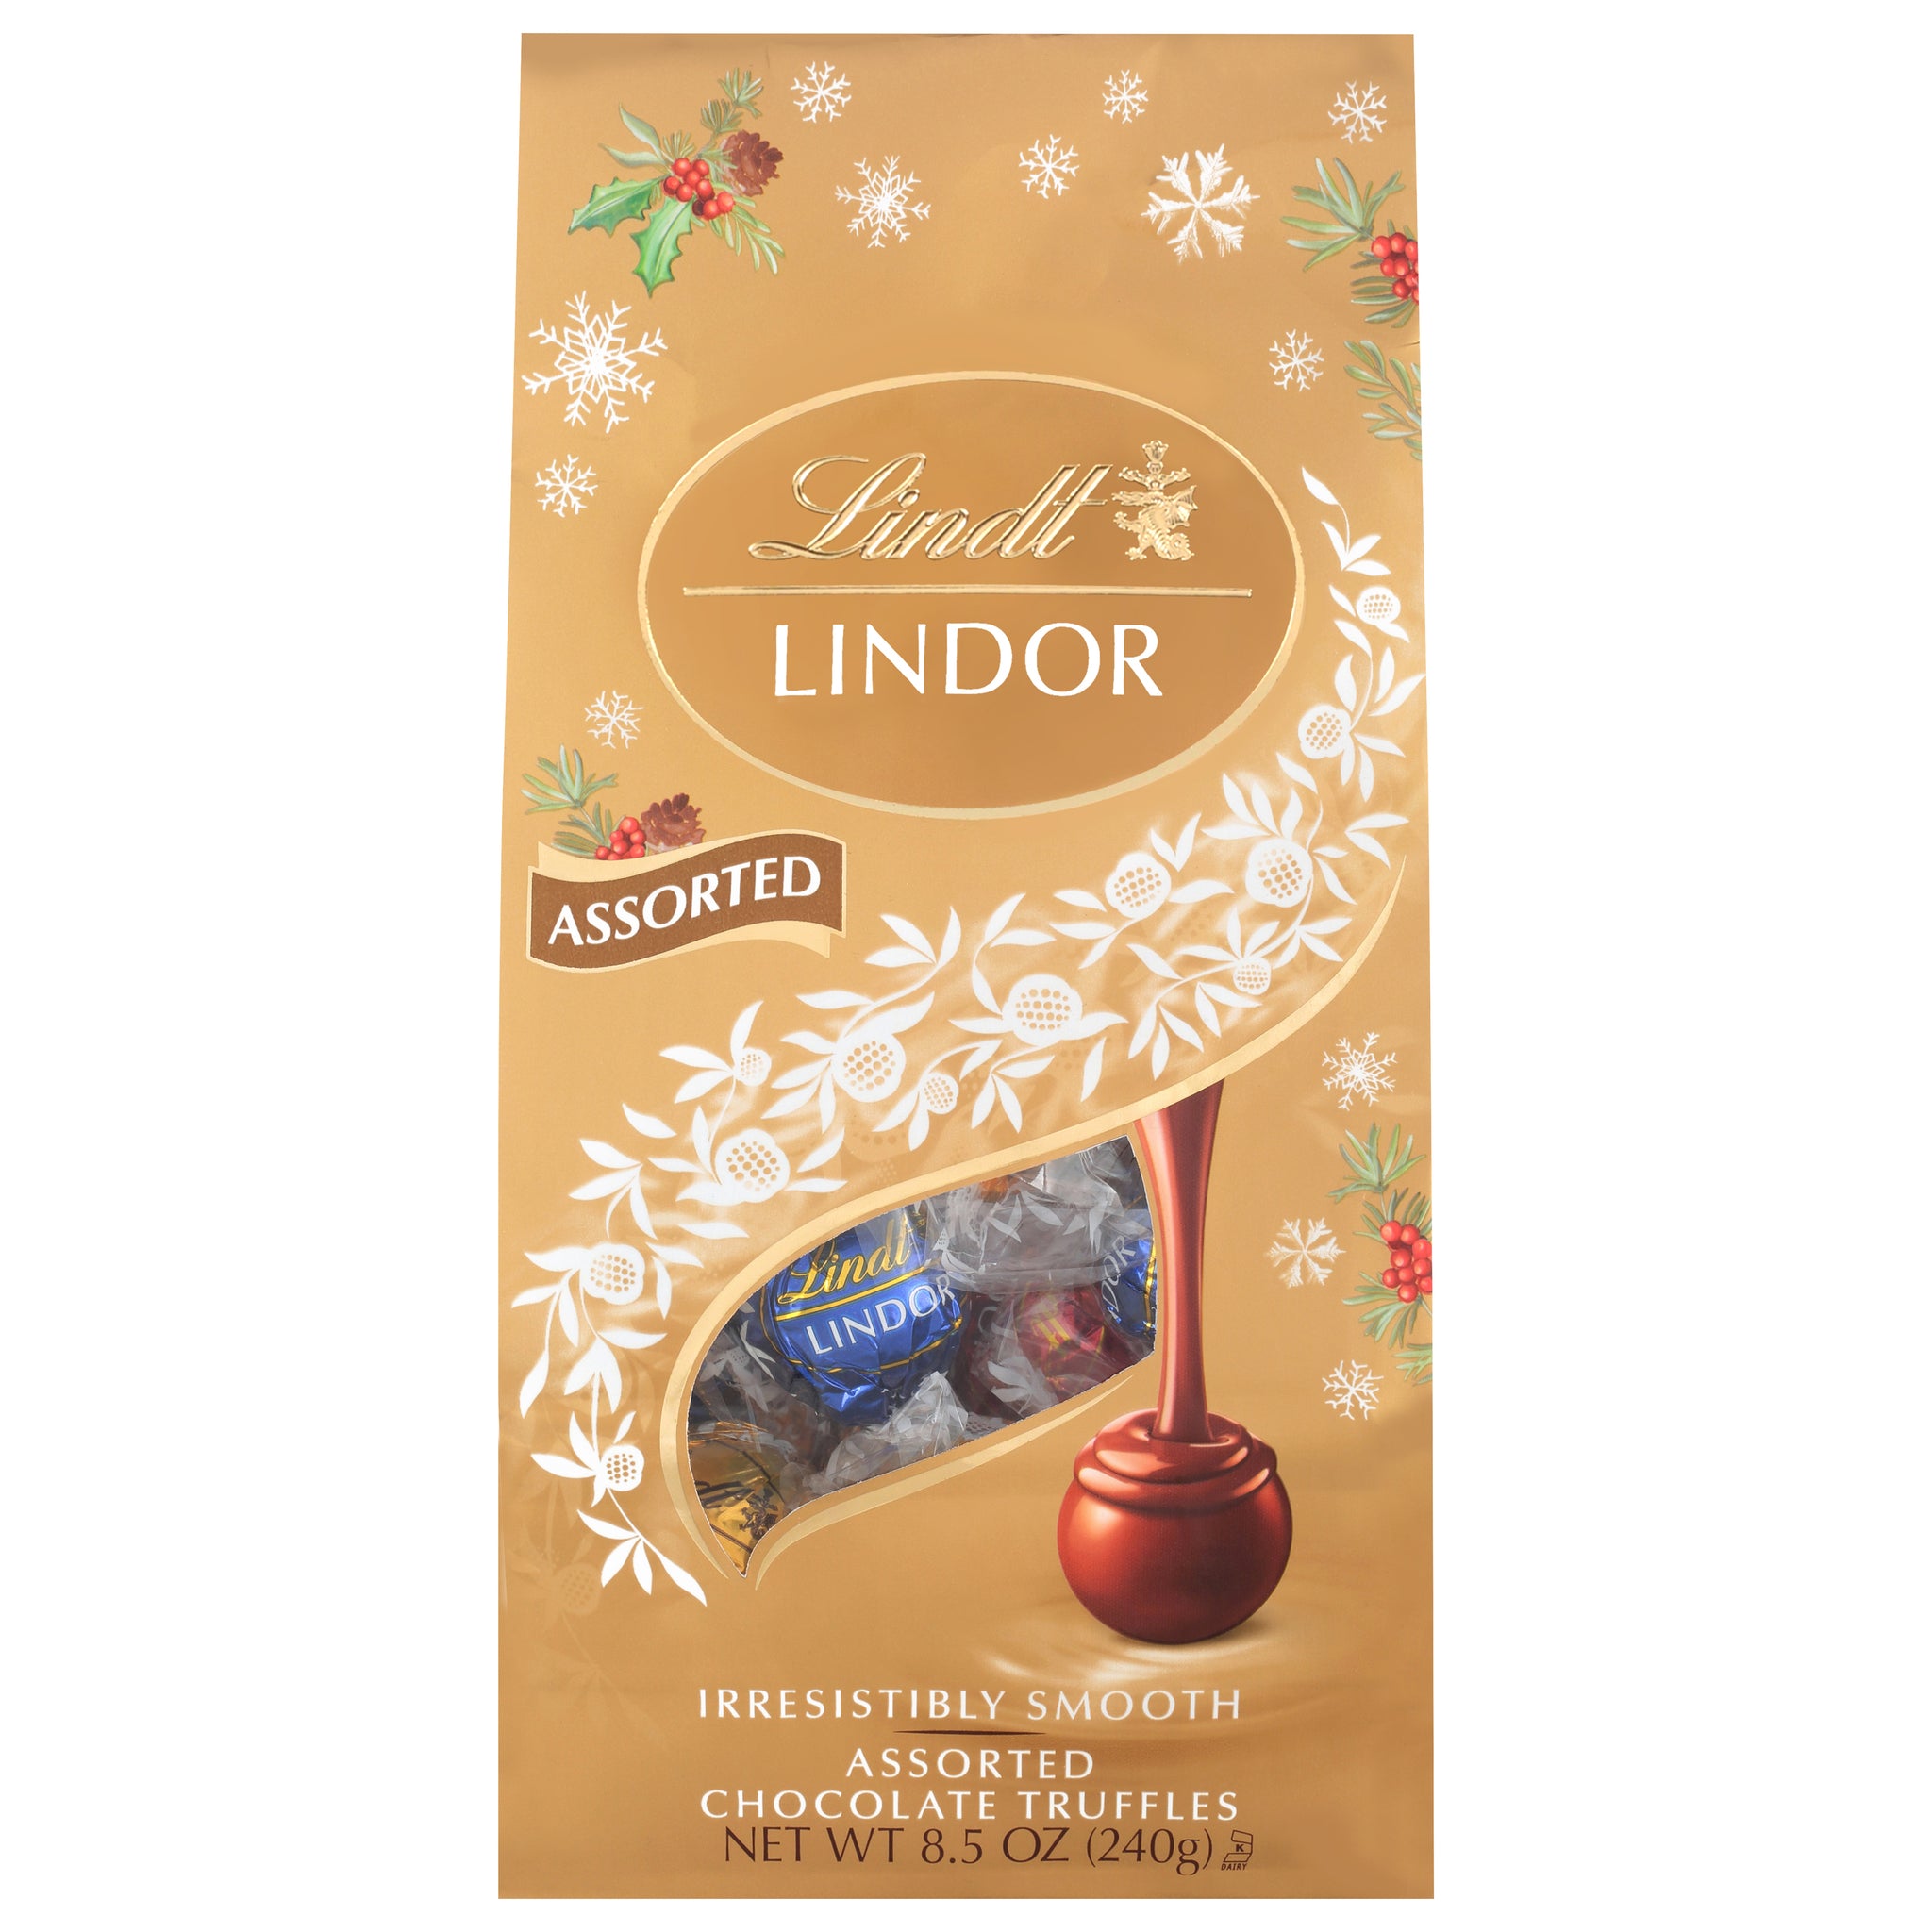 Lindor Assorted Chocolate Truffles - 8.5 oz bag